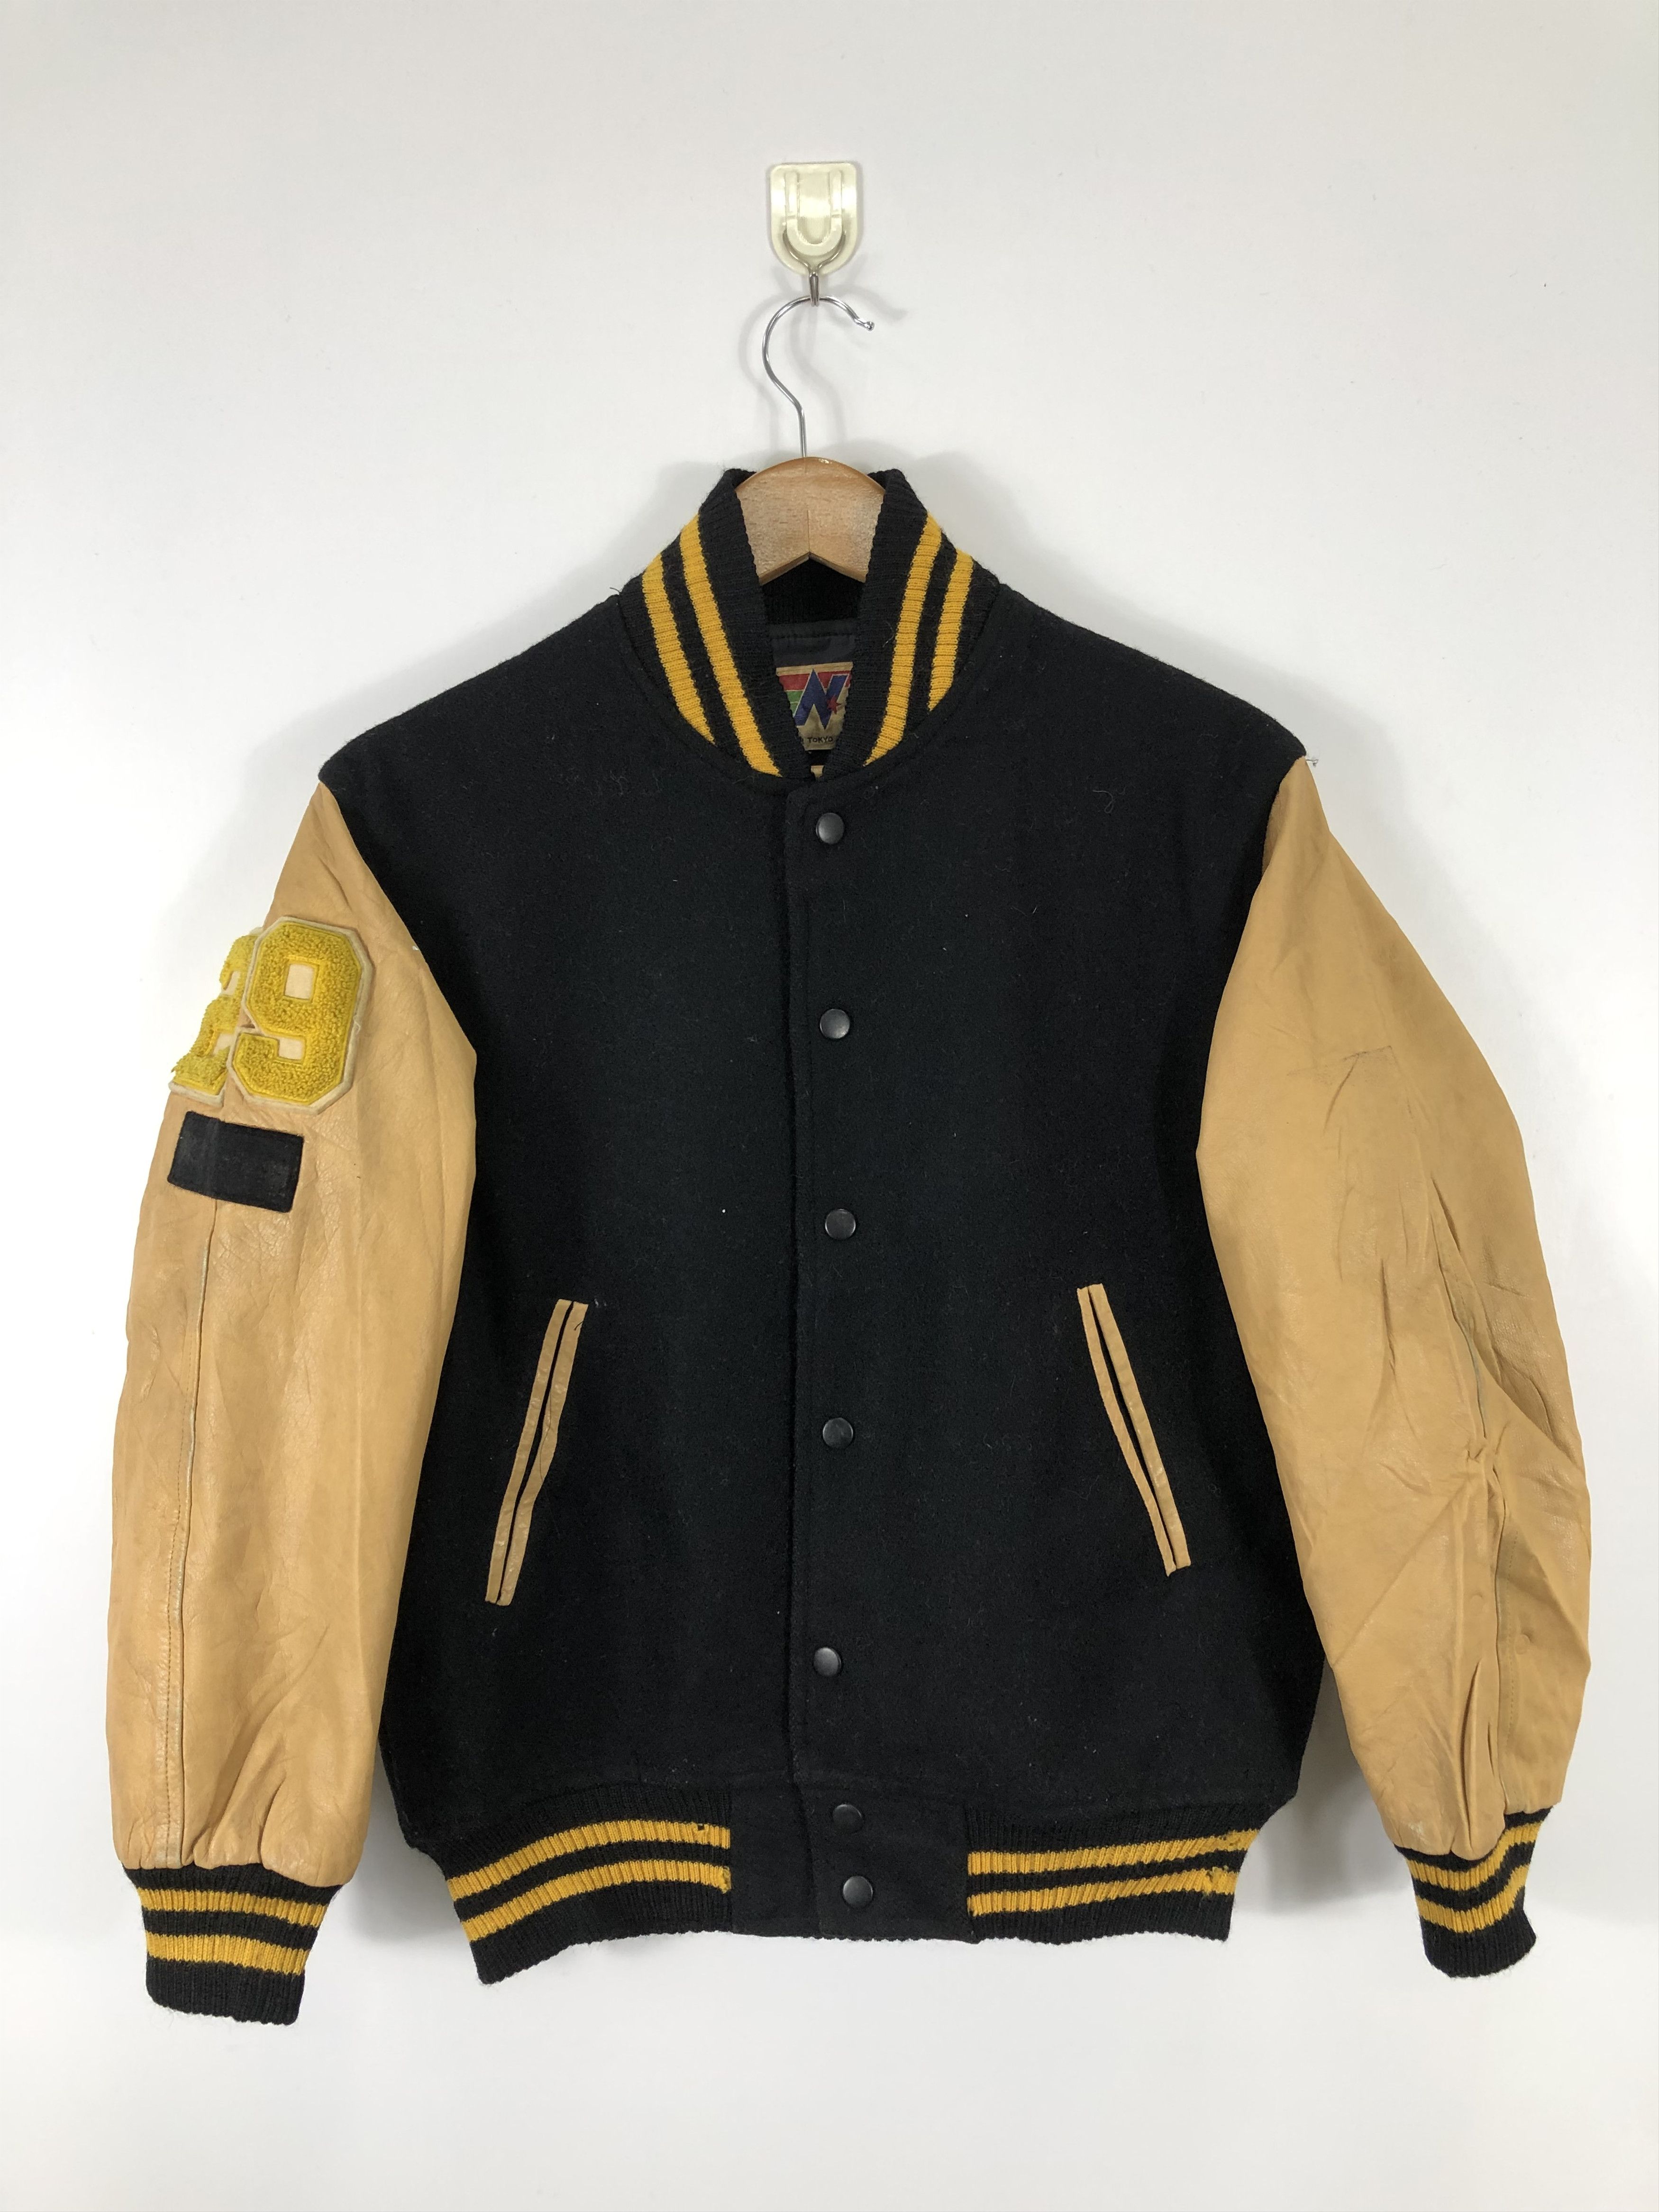 Vintage Vintage 70s Japanese Brand Varsity Jacket Leather Sleeve 